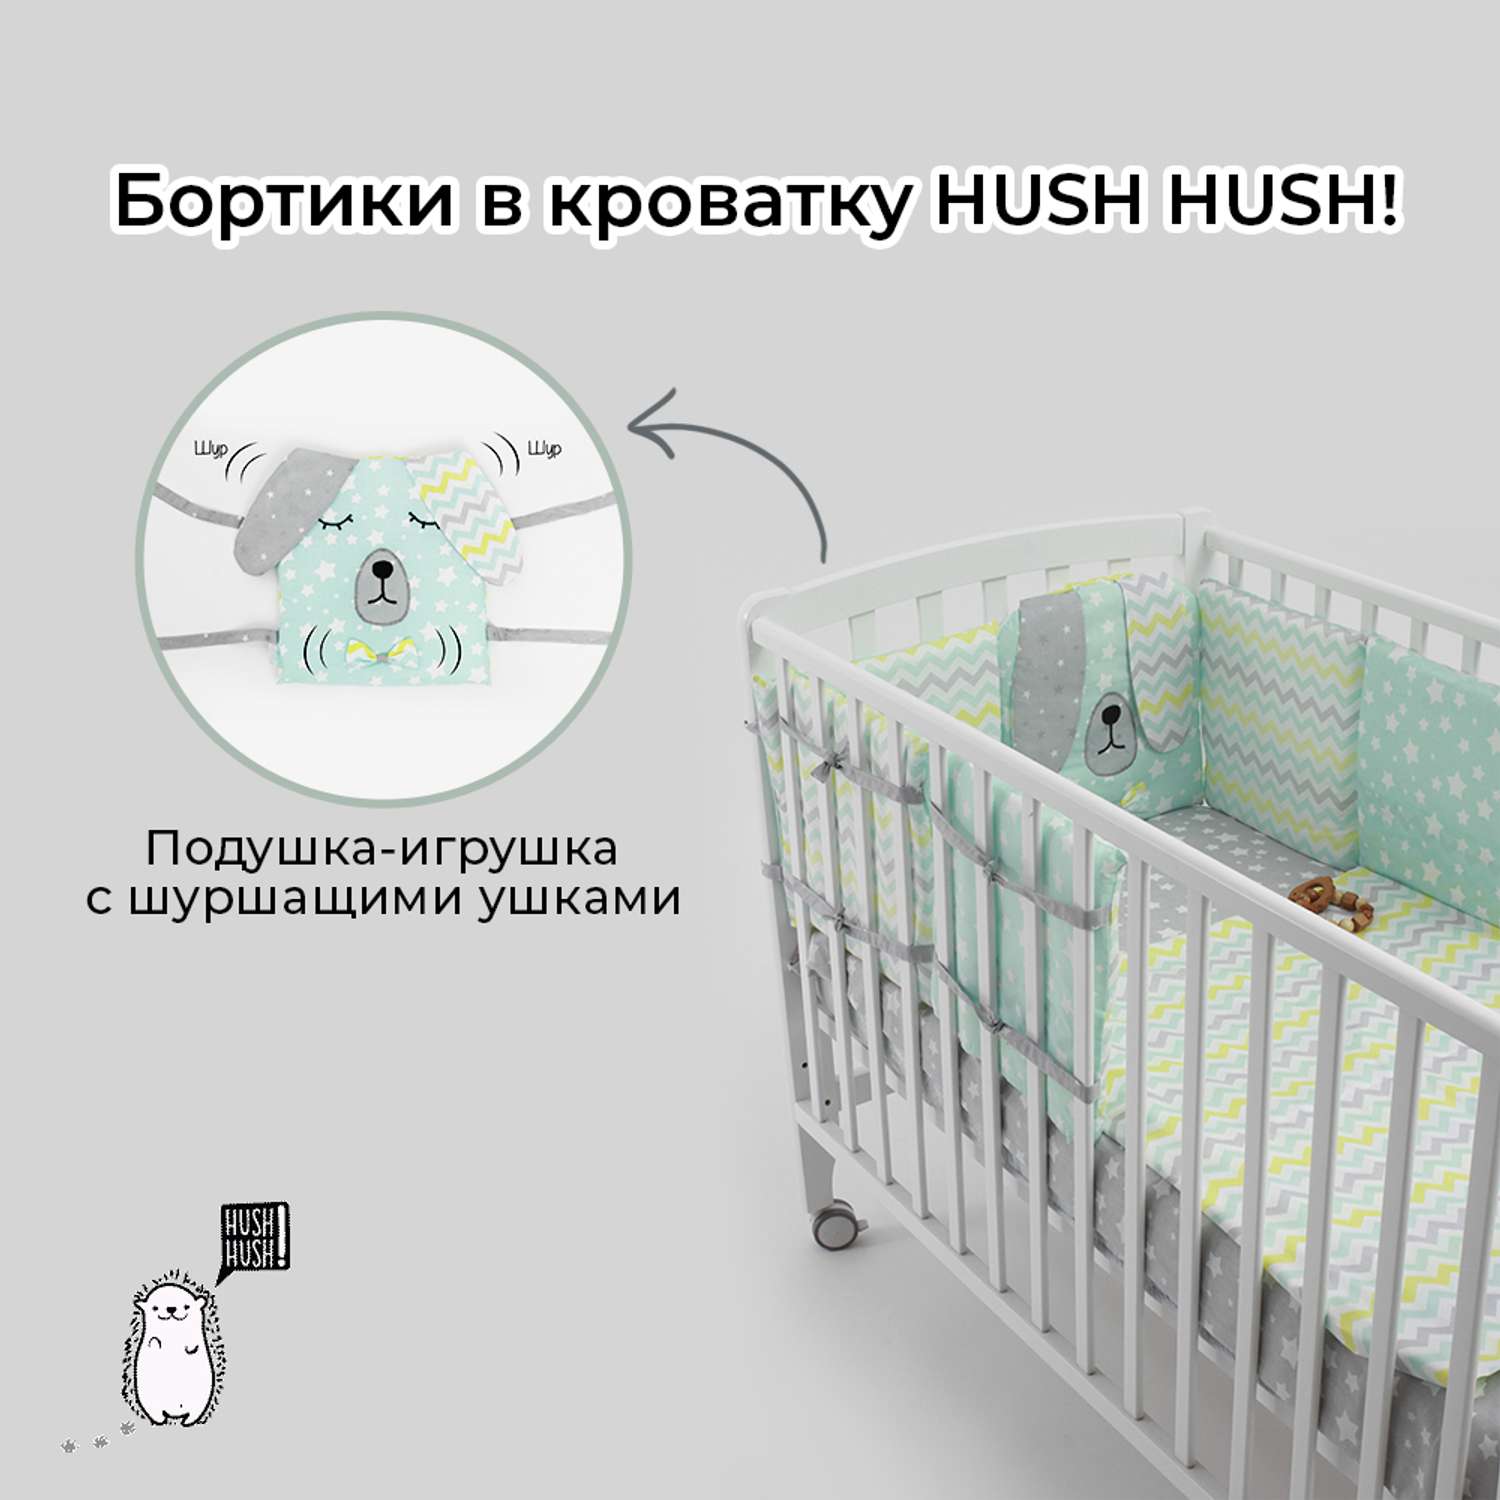 Бортики в кроватку Hush Hush! для новорожденных с шуршащими ушками Сонный Дружок Green 5113 - фото 2